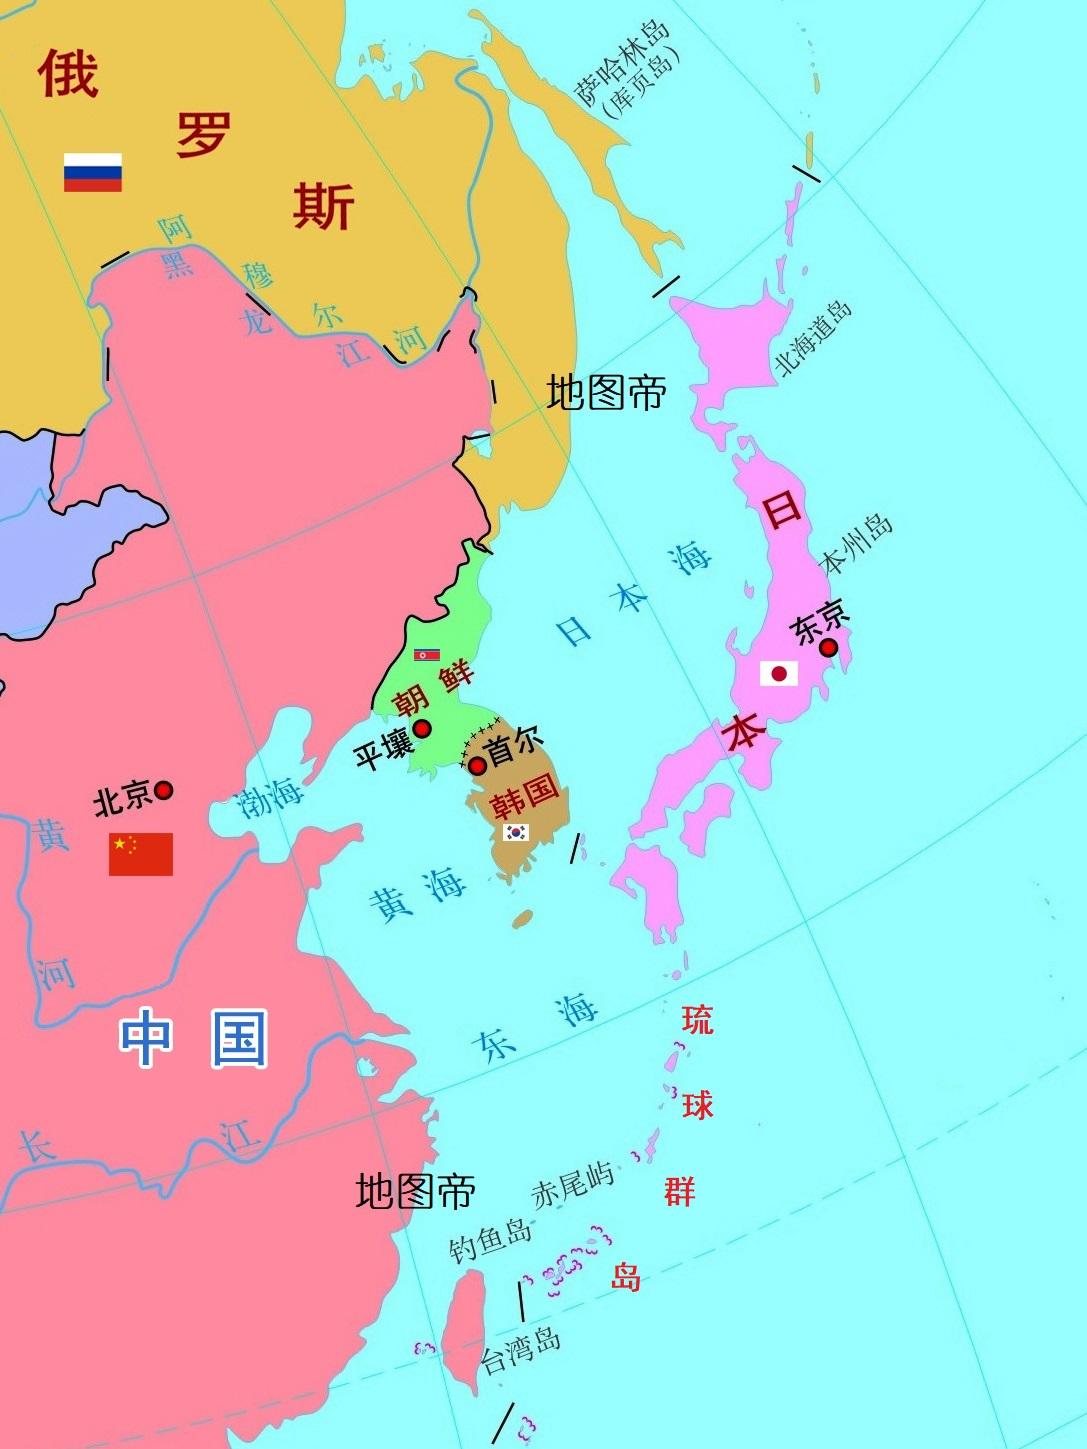 琉球群岛是中国领土吗